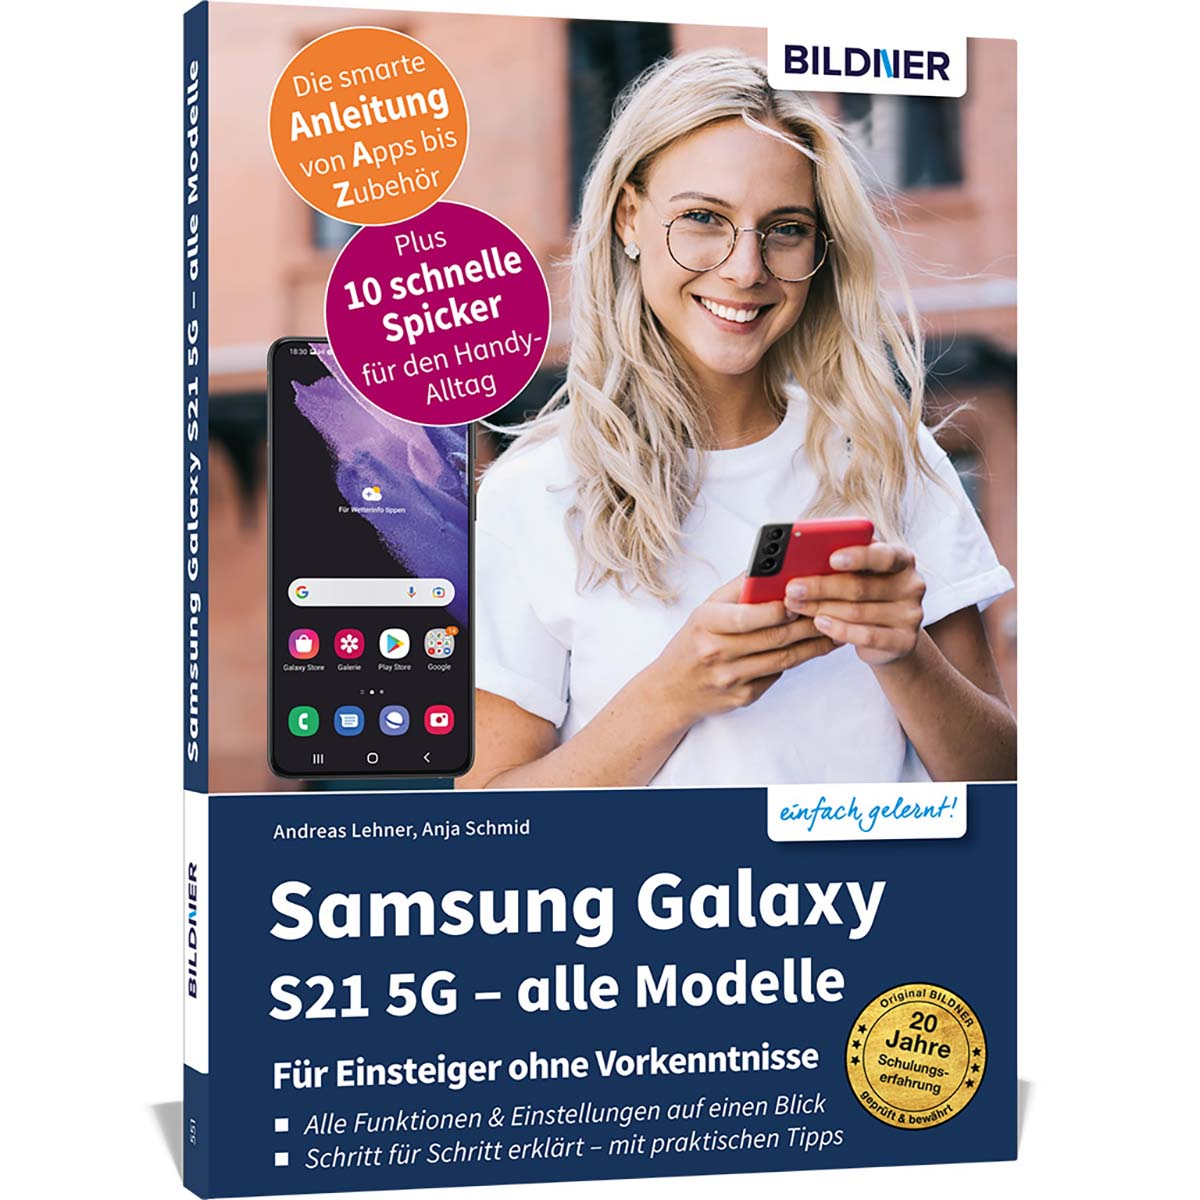 Galaxy 5G Modelle S21 alle - Samsung